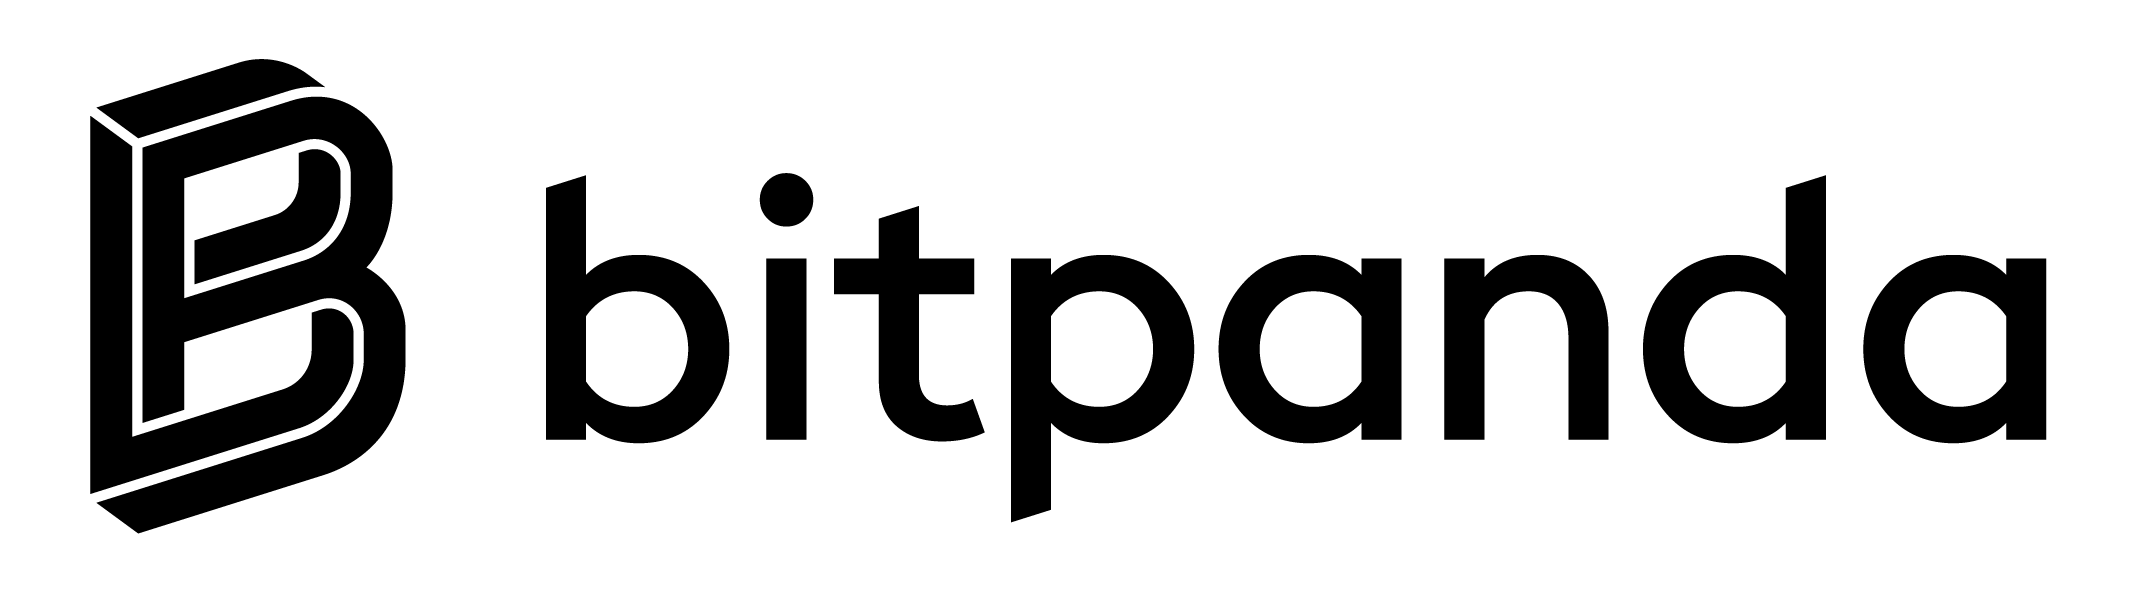 BitPanda Review Is It a Scam or Legit? - Skrumble